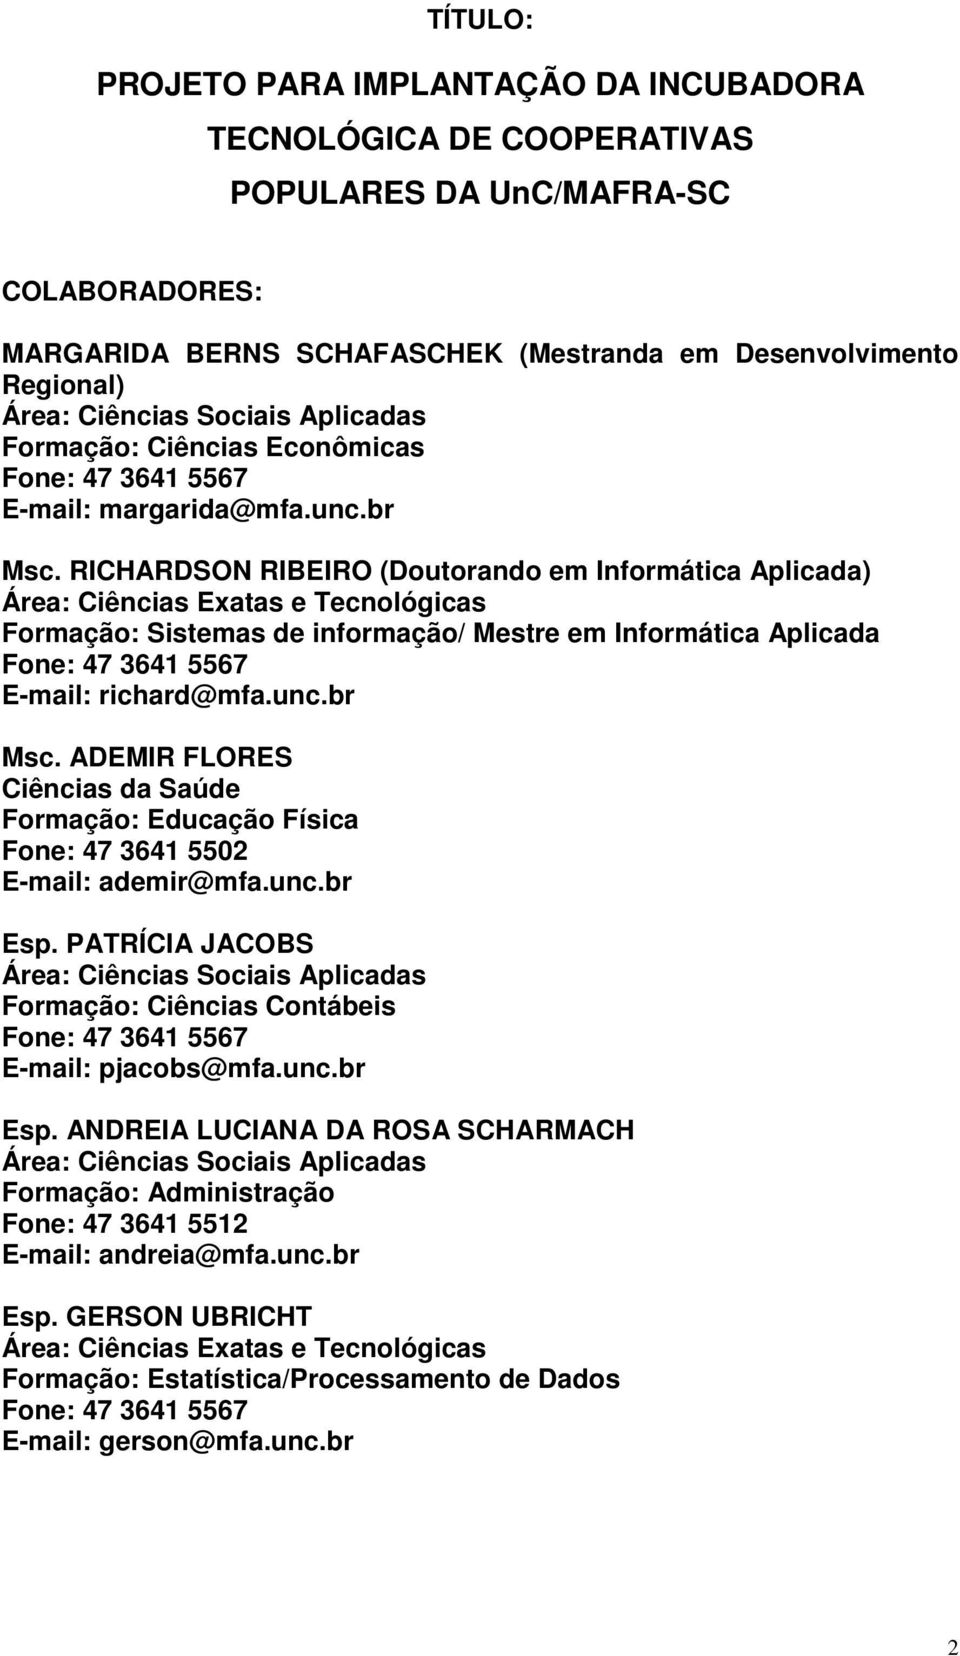 RICHARDSON RIBEIRO (Doutorando em Informática Aplicada) Área: Ciências Exatas e Tecnológicas Formação: Sistemas de informação/ Mestre em Informática Aplicada Fone: 47 3641 5567 E-mail: richard@mfa.